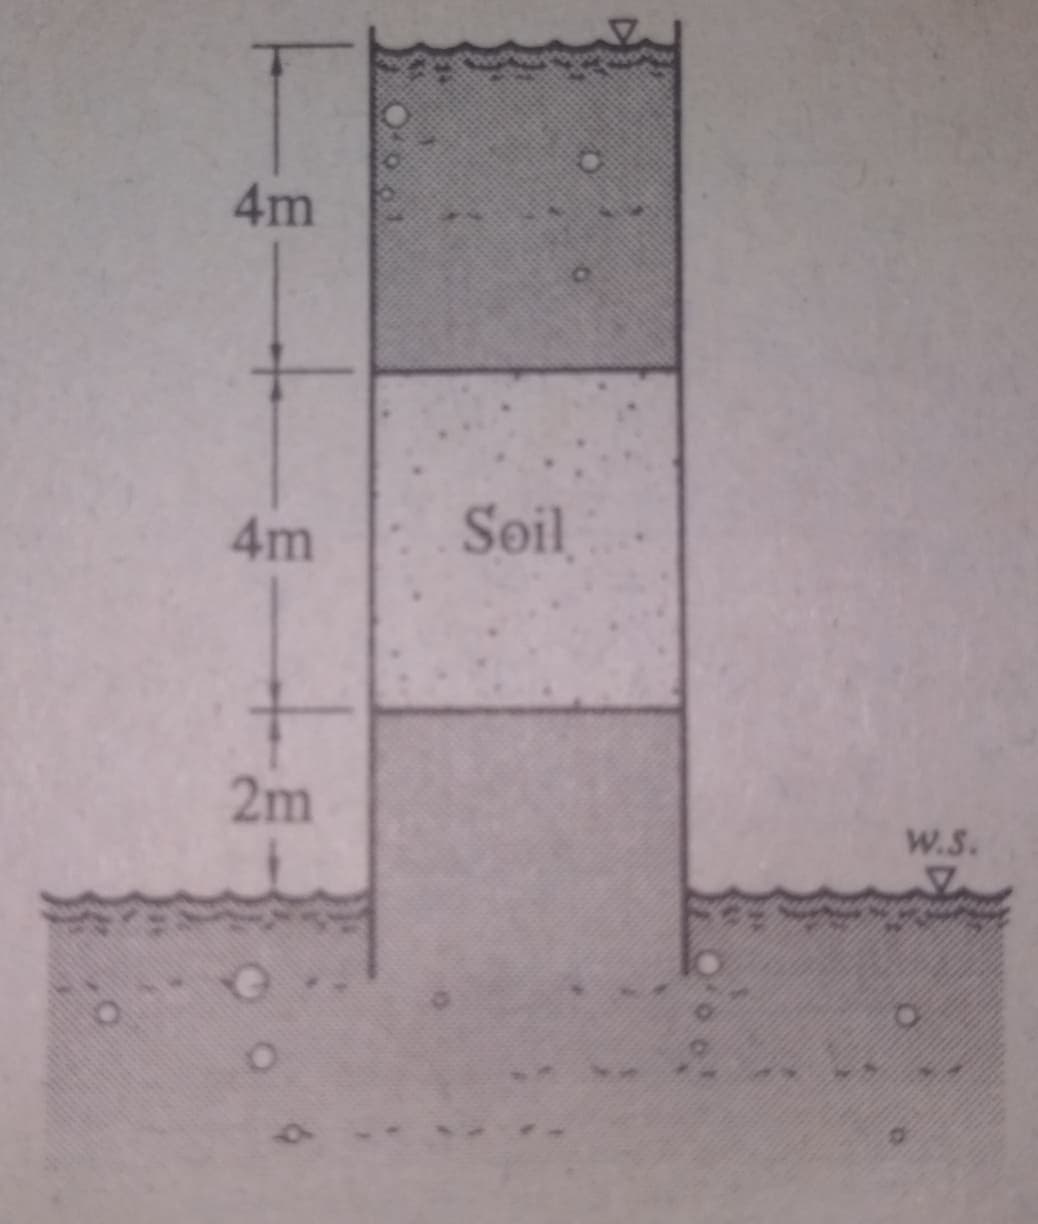 4m
4m
Soil
2m
W.S.
